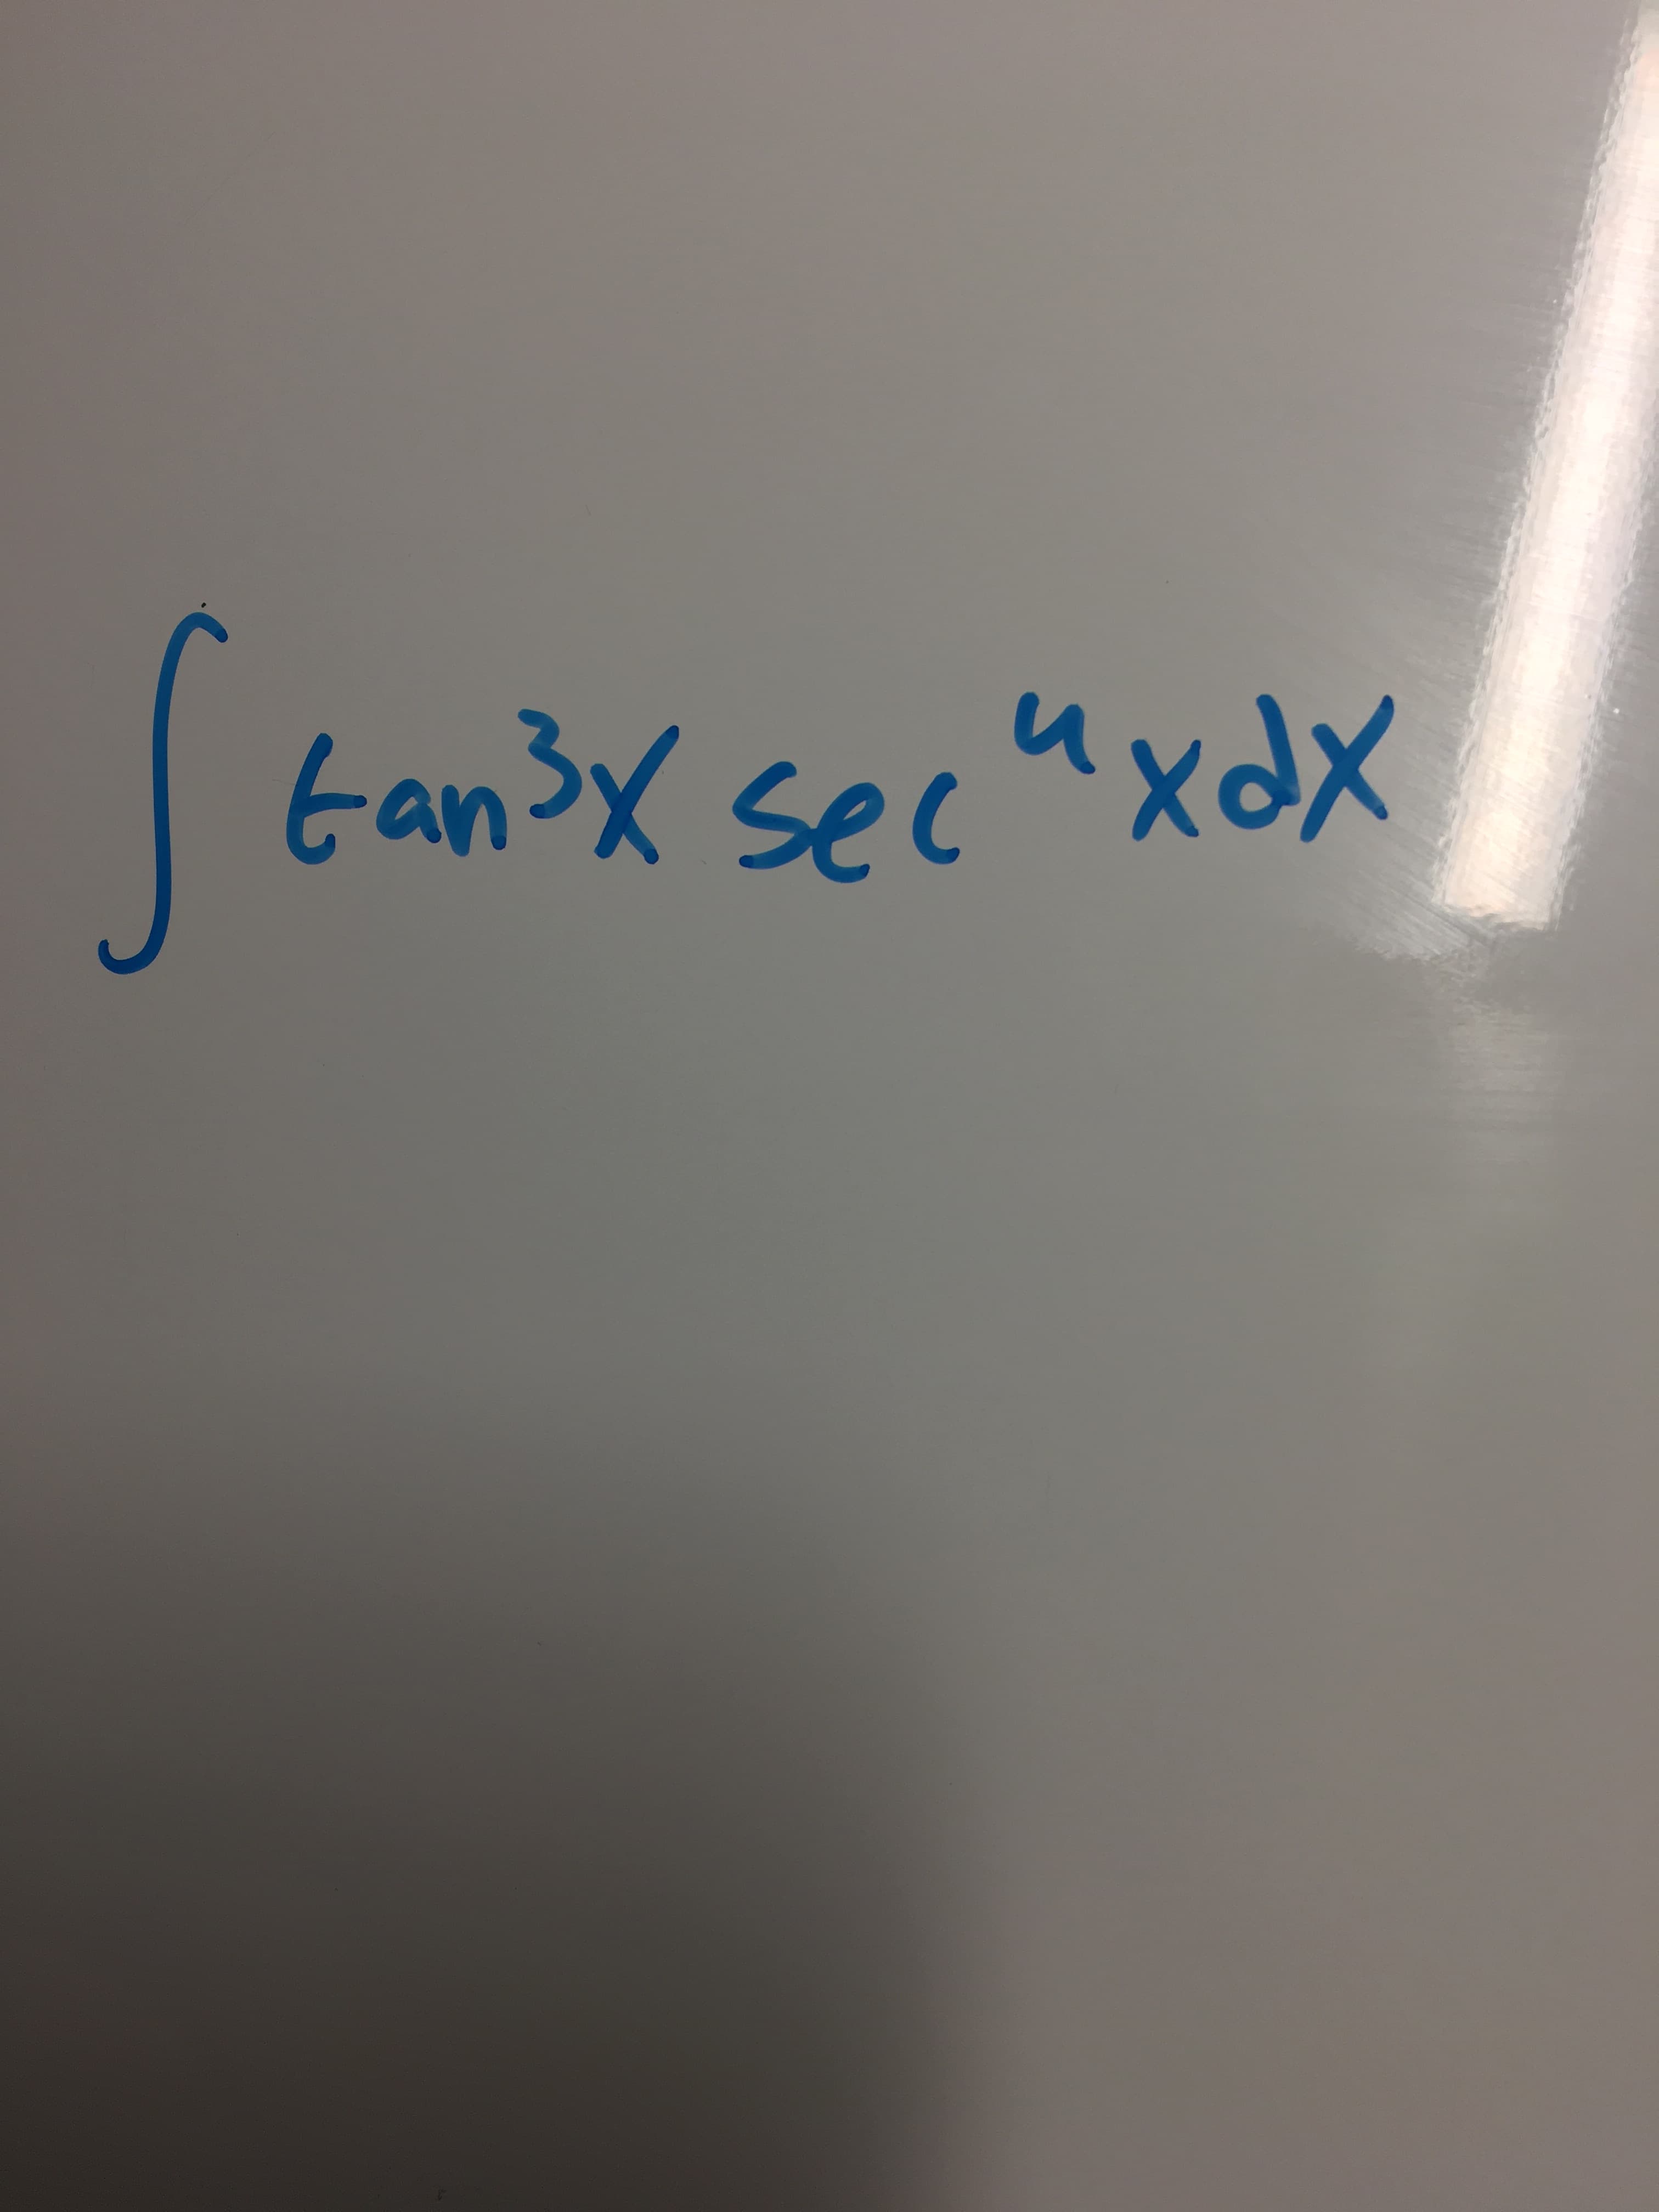 tan3x secaxX
